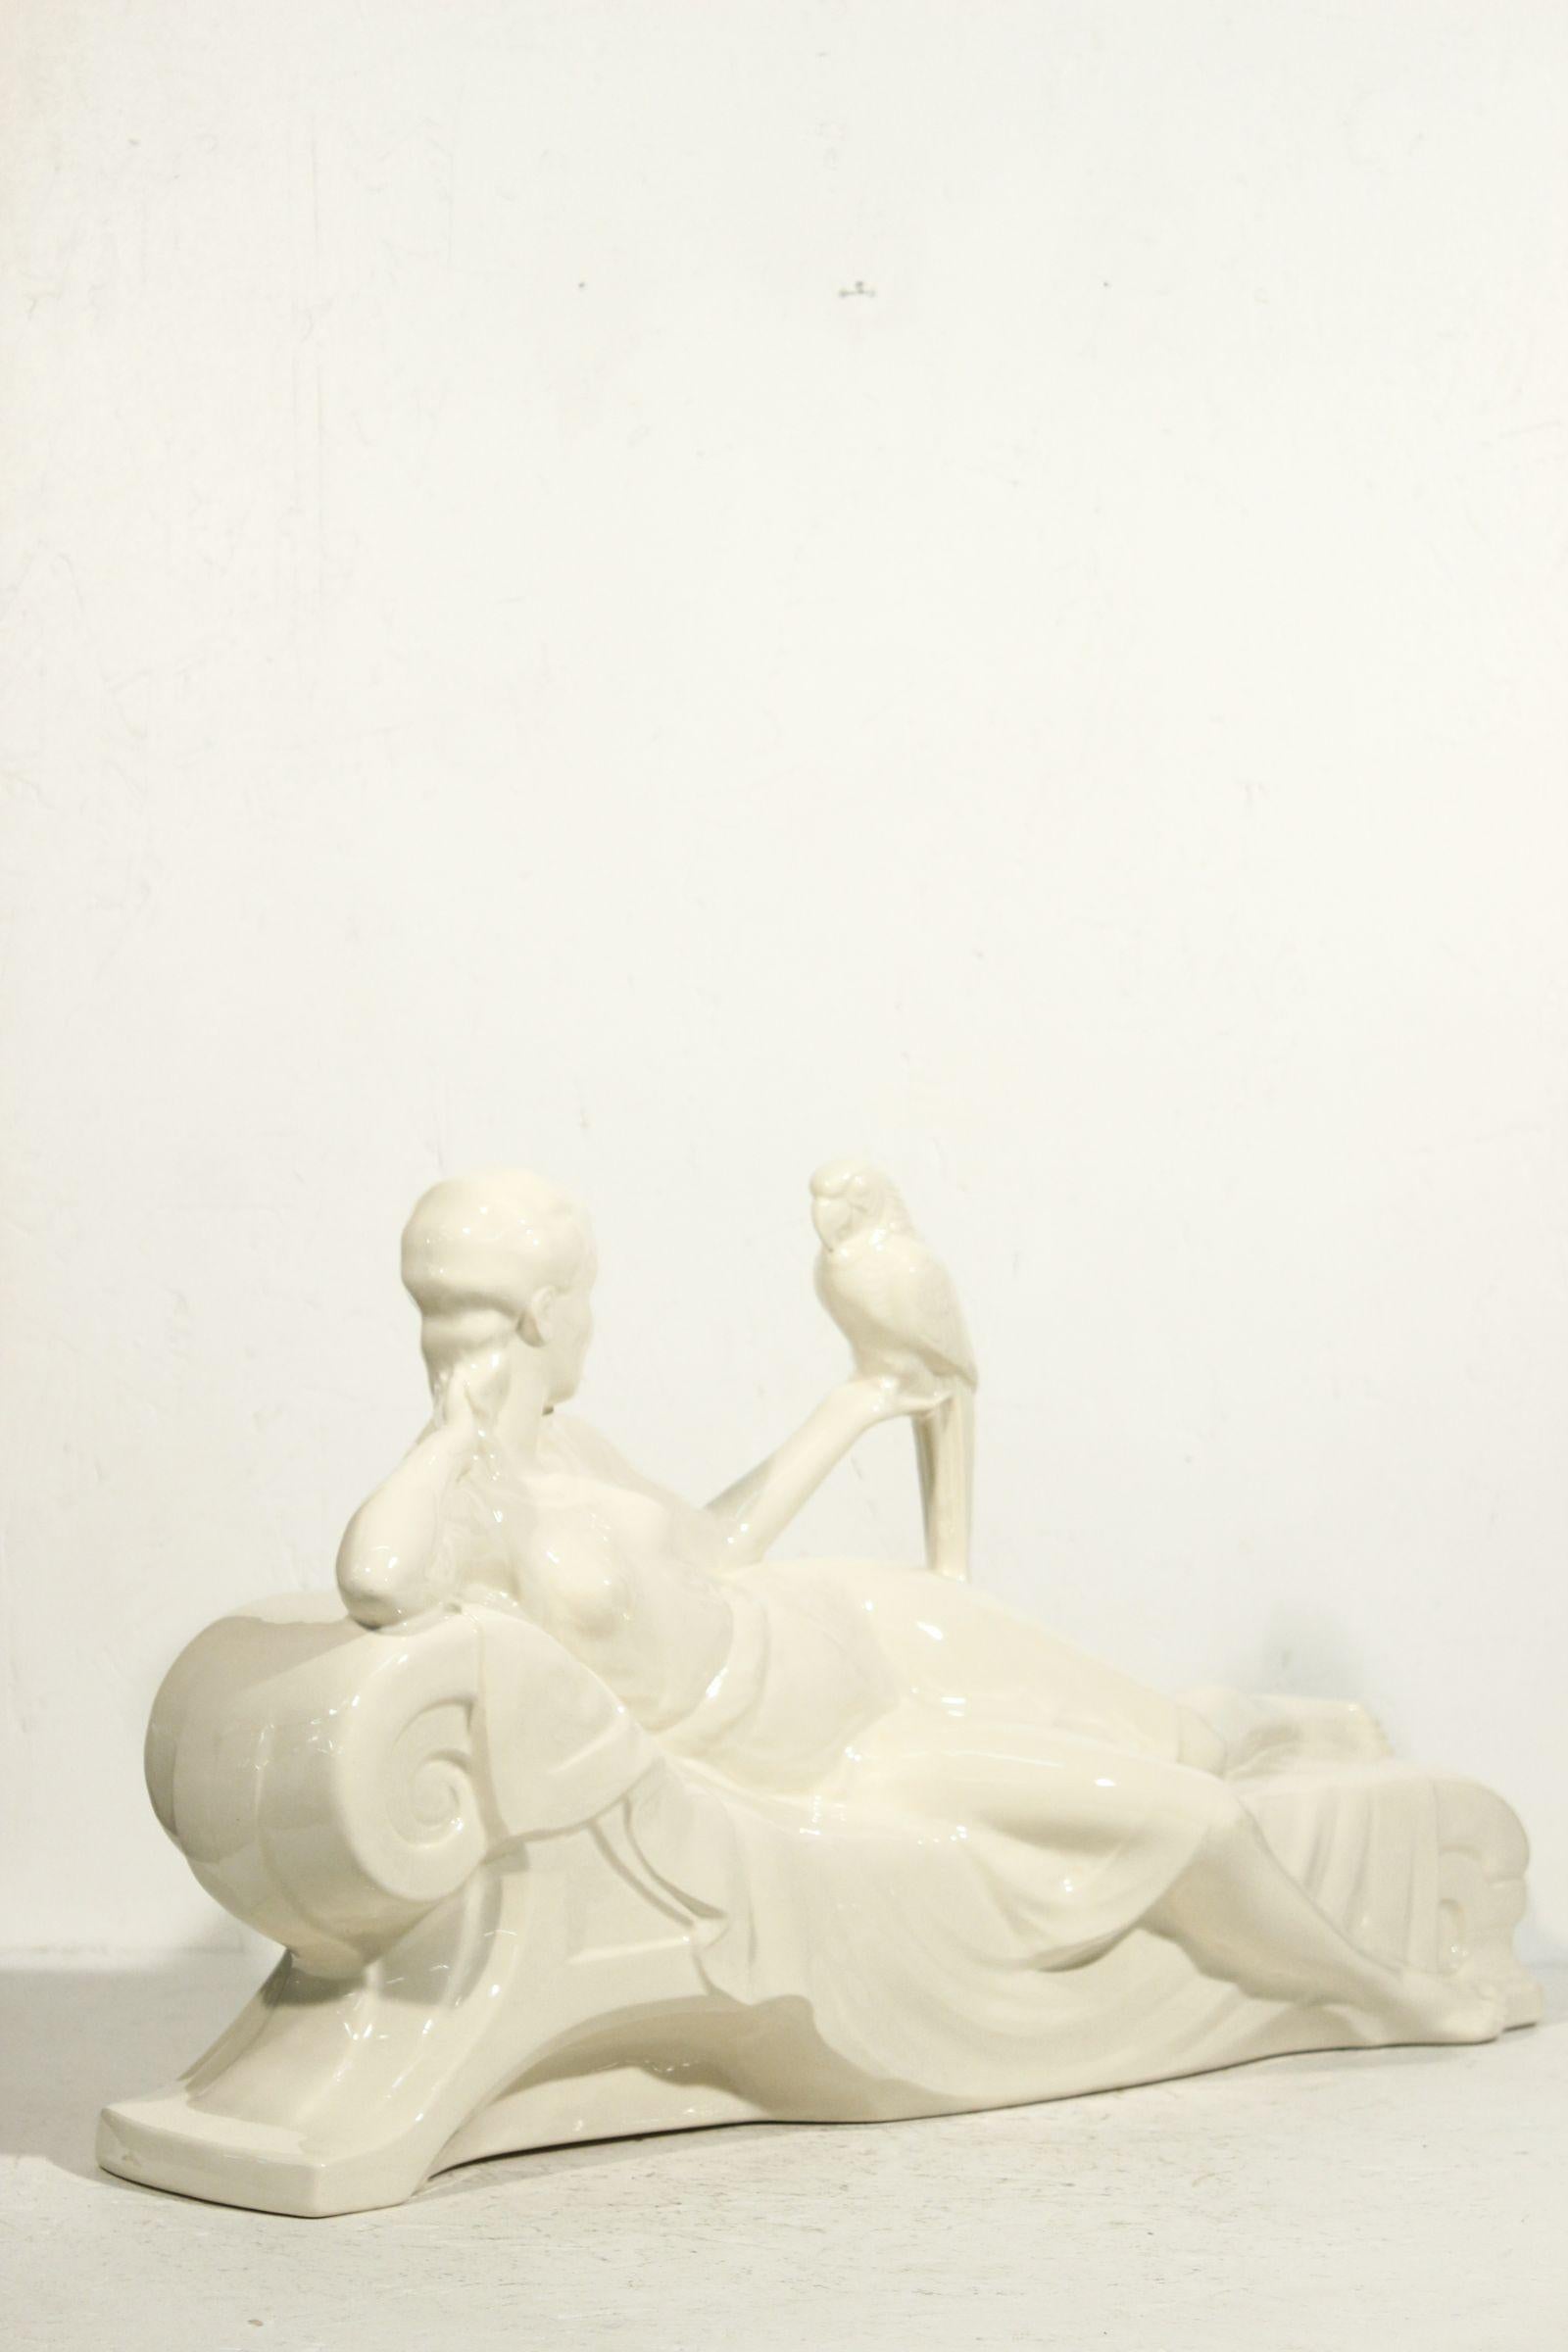 Grande et élégante sculpture d'une femme partiellement drapée, allongée et tenant un perroquet. Rare production de Sarreguemines France vers 1930, issue d'une collection éphémère qui célébrait les années folles des années 1920. 

Très belle pièce de